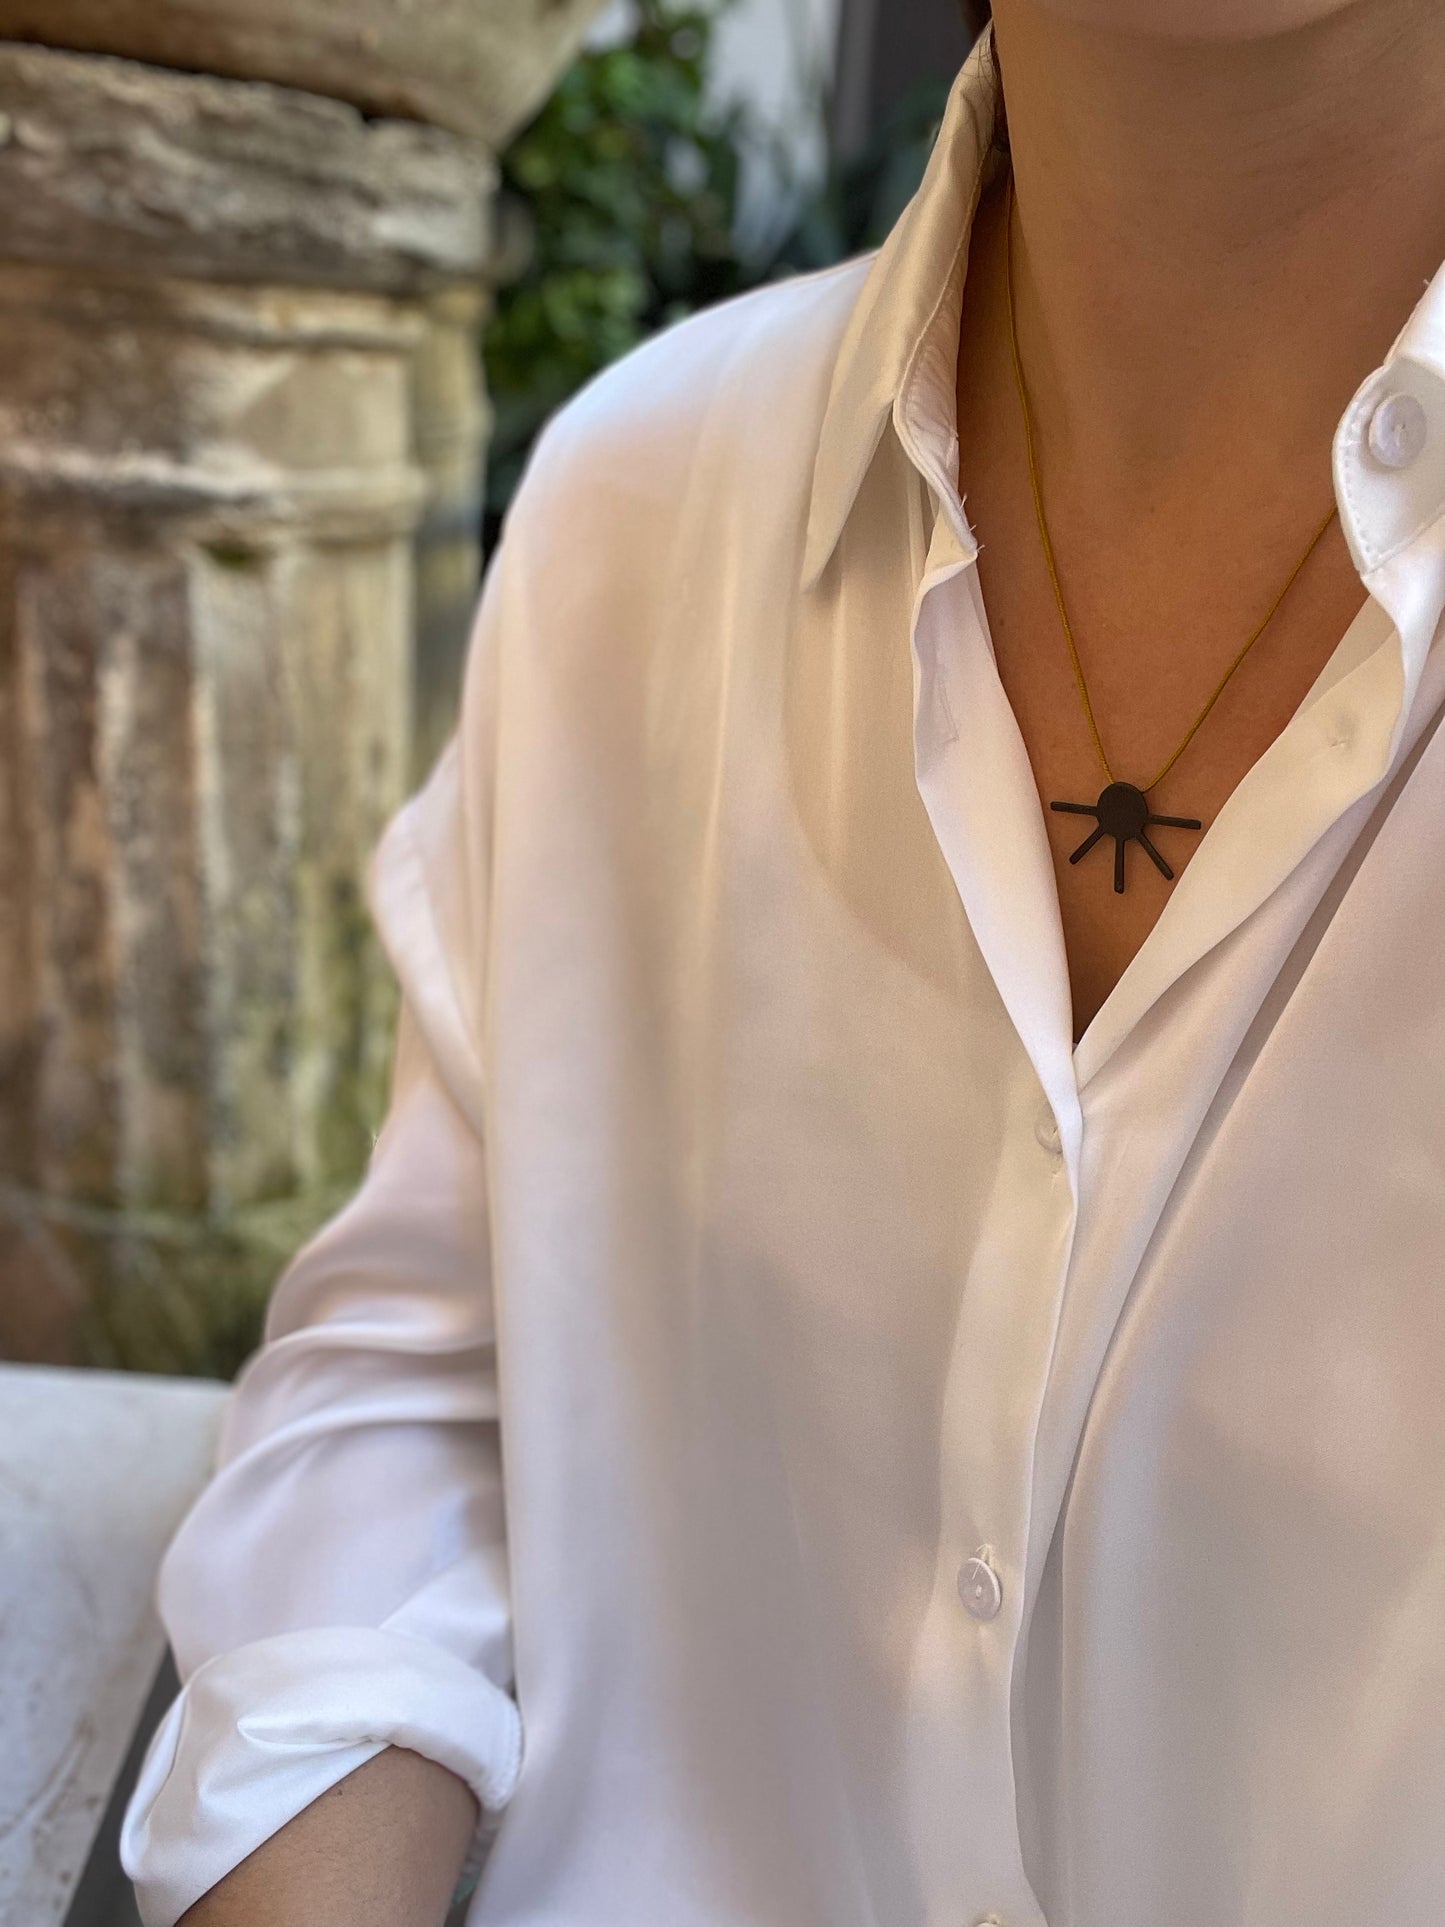 Oxidised Brass necklace | Black Sun Necklace - CURIUDO